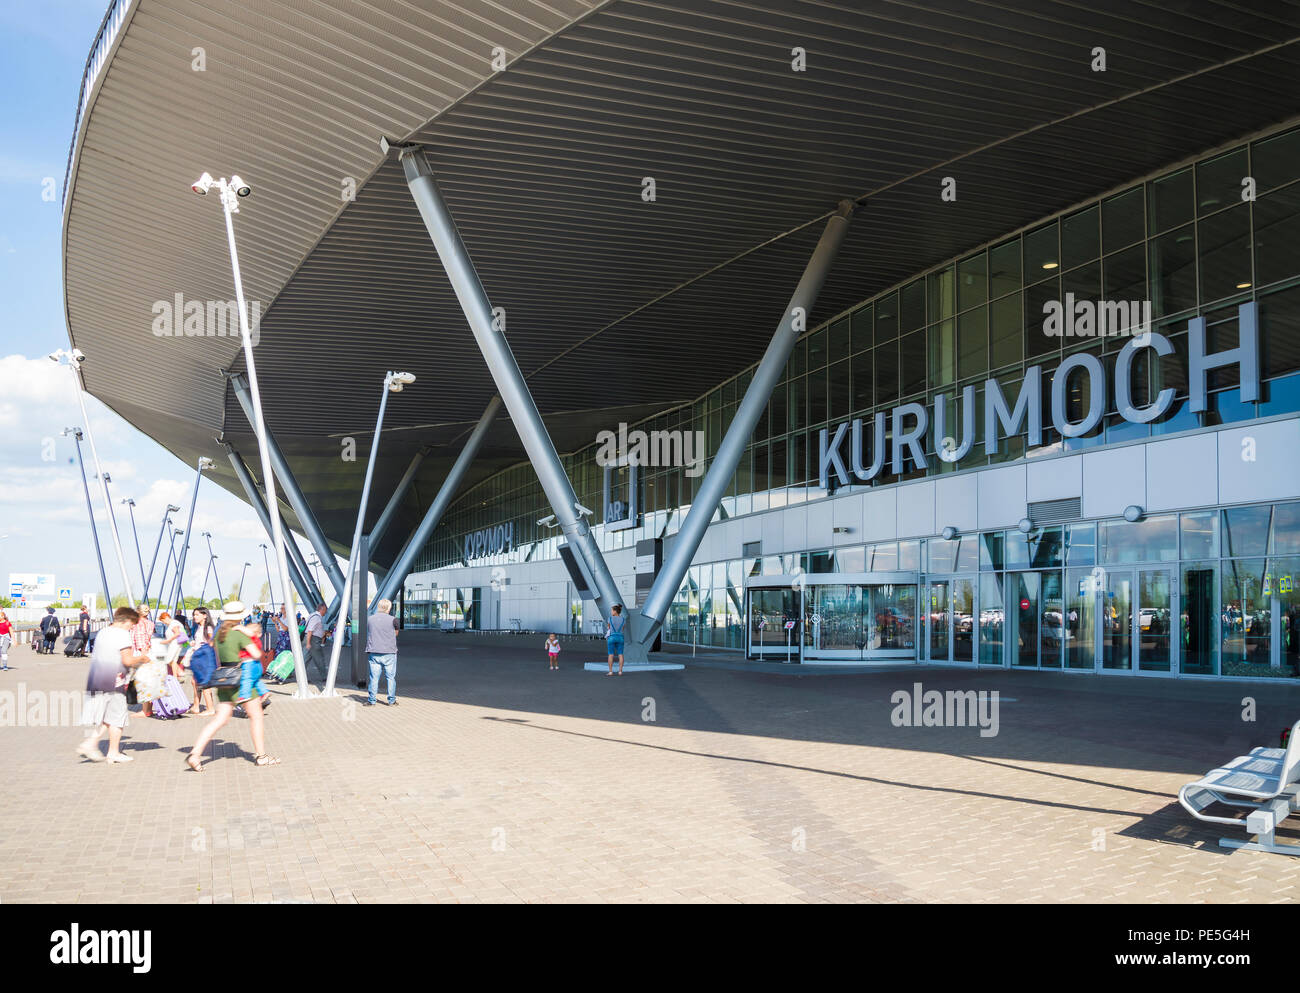 The airport Kurumoch in Samara, Russia. Summer Sunny day, August 11, 2018 Stock Photo